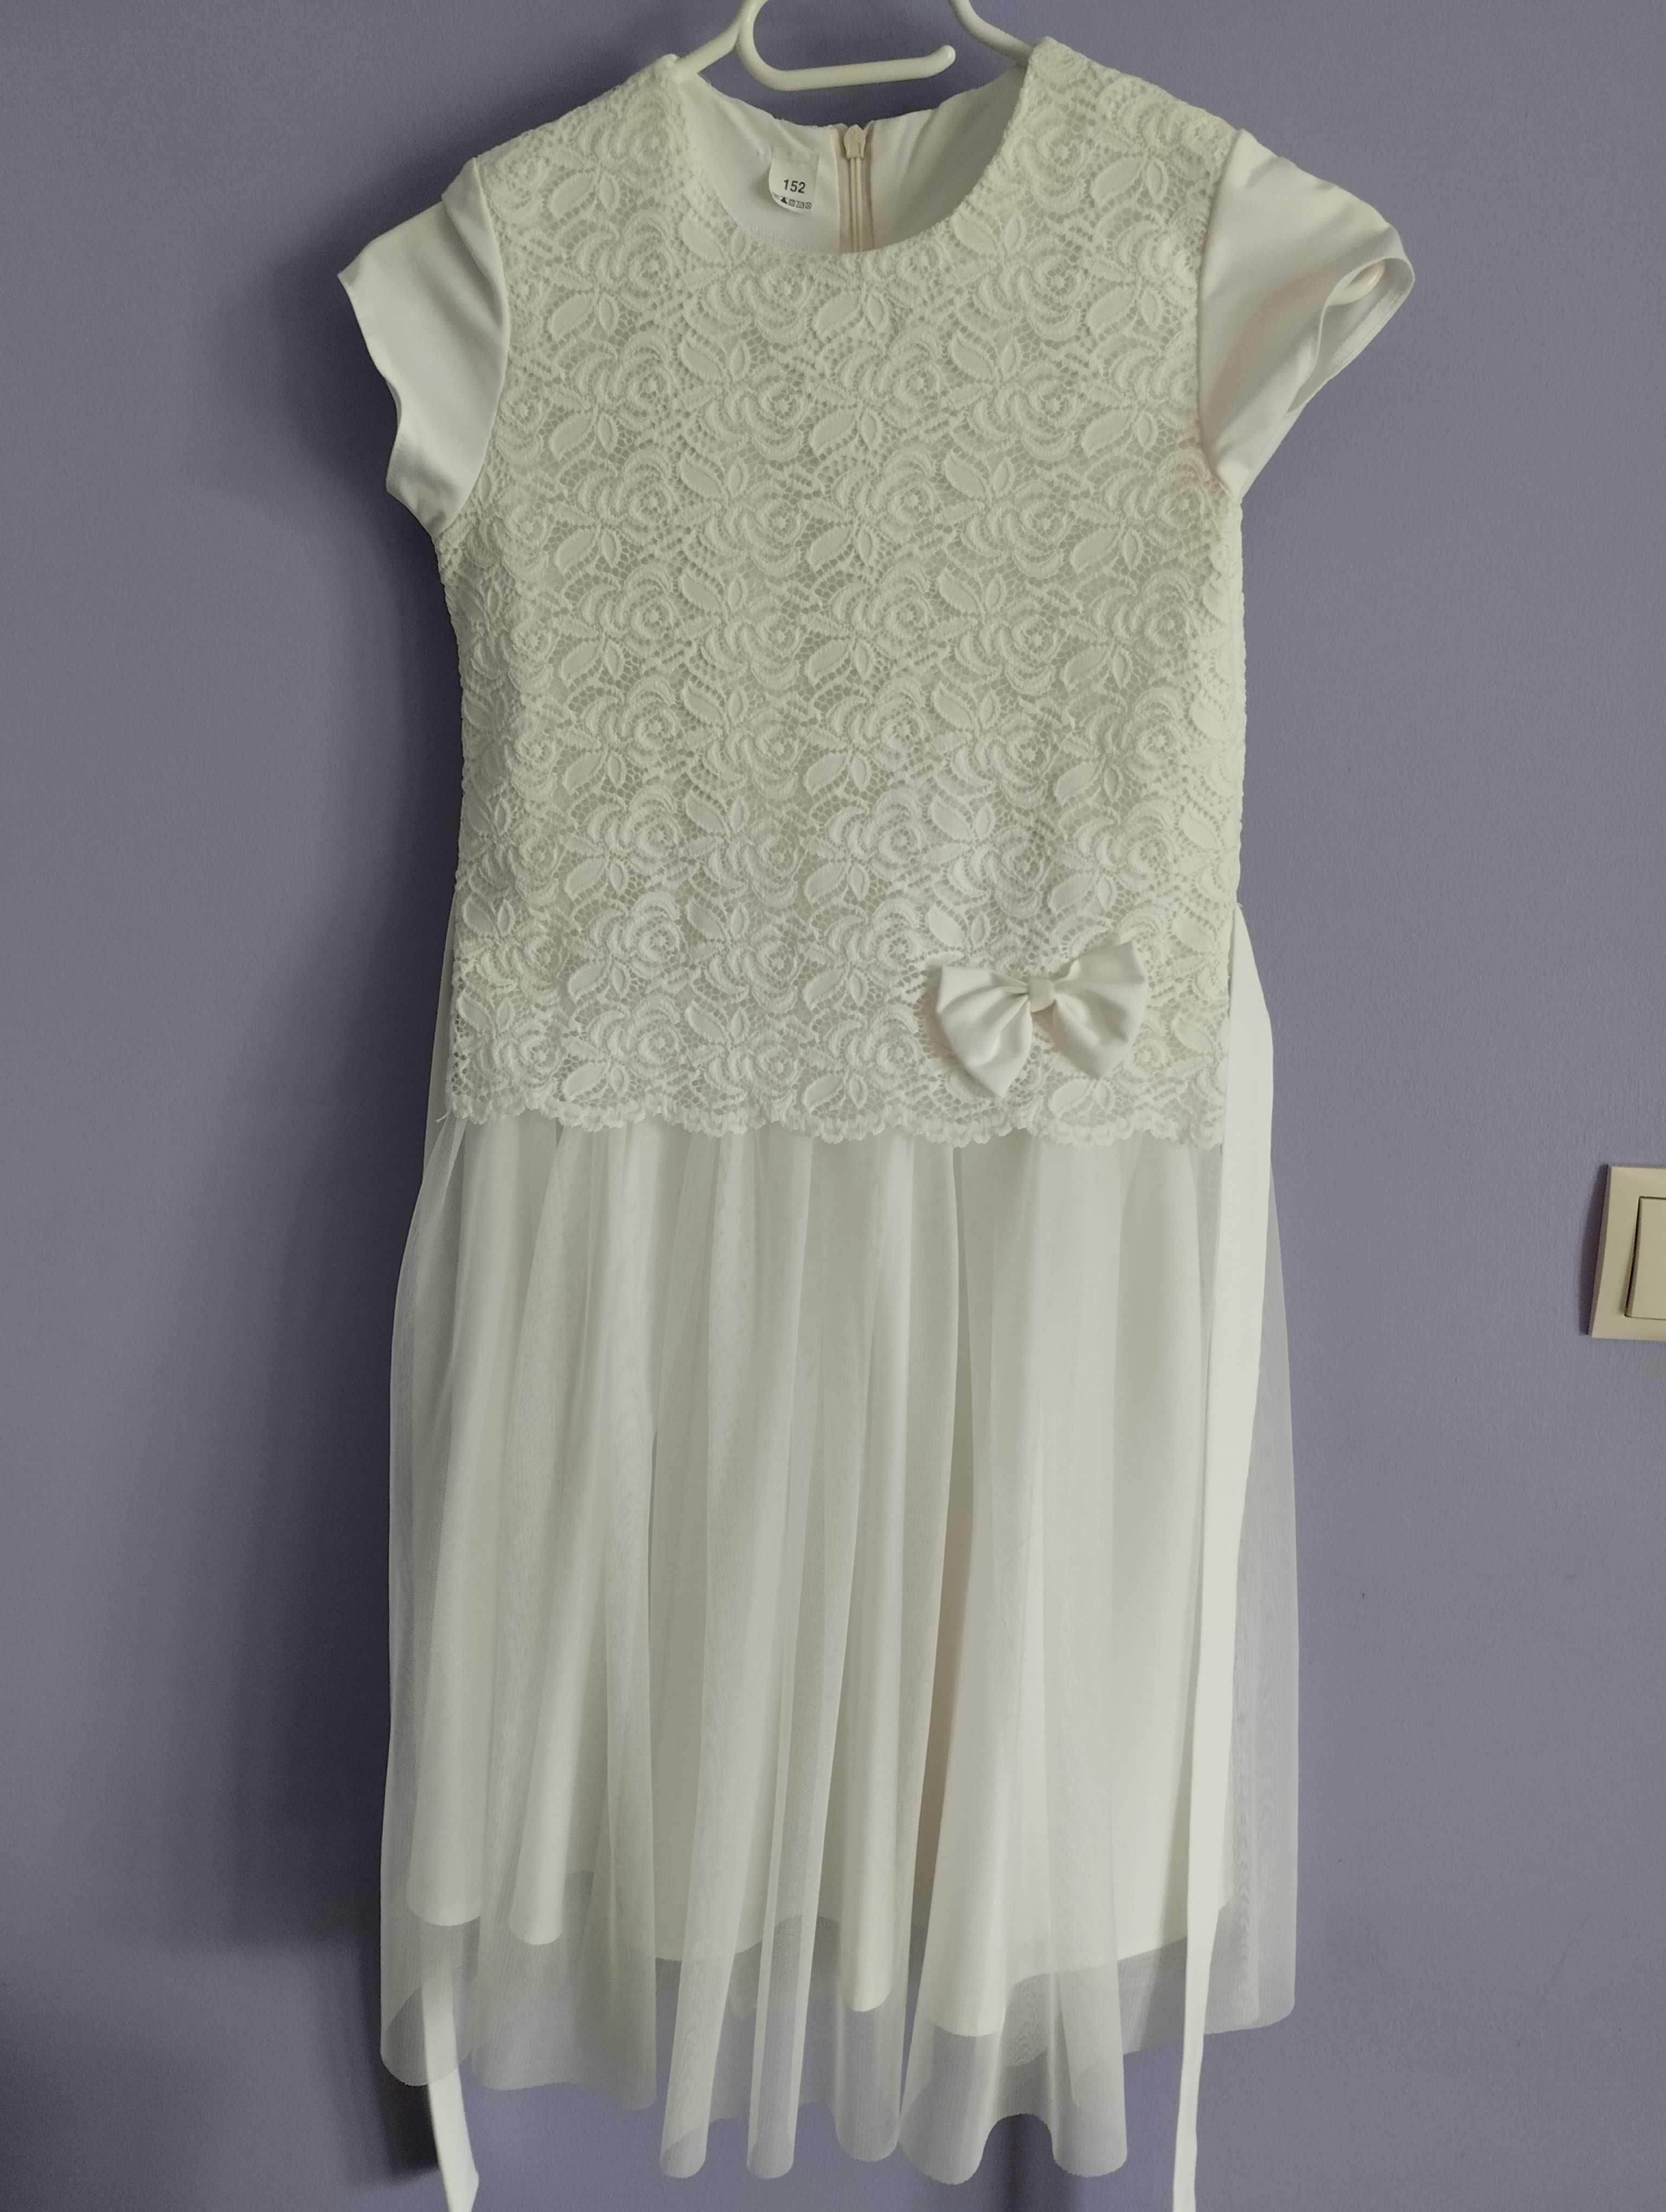 Sukienka biała rozmiar 152